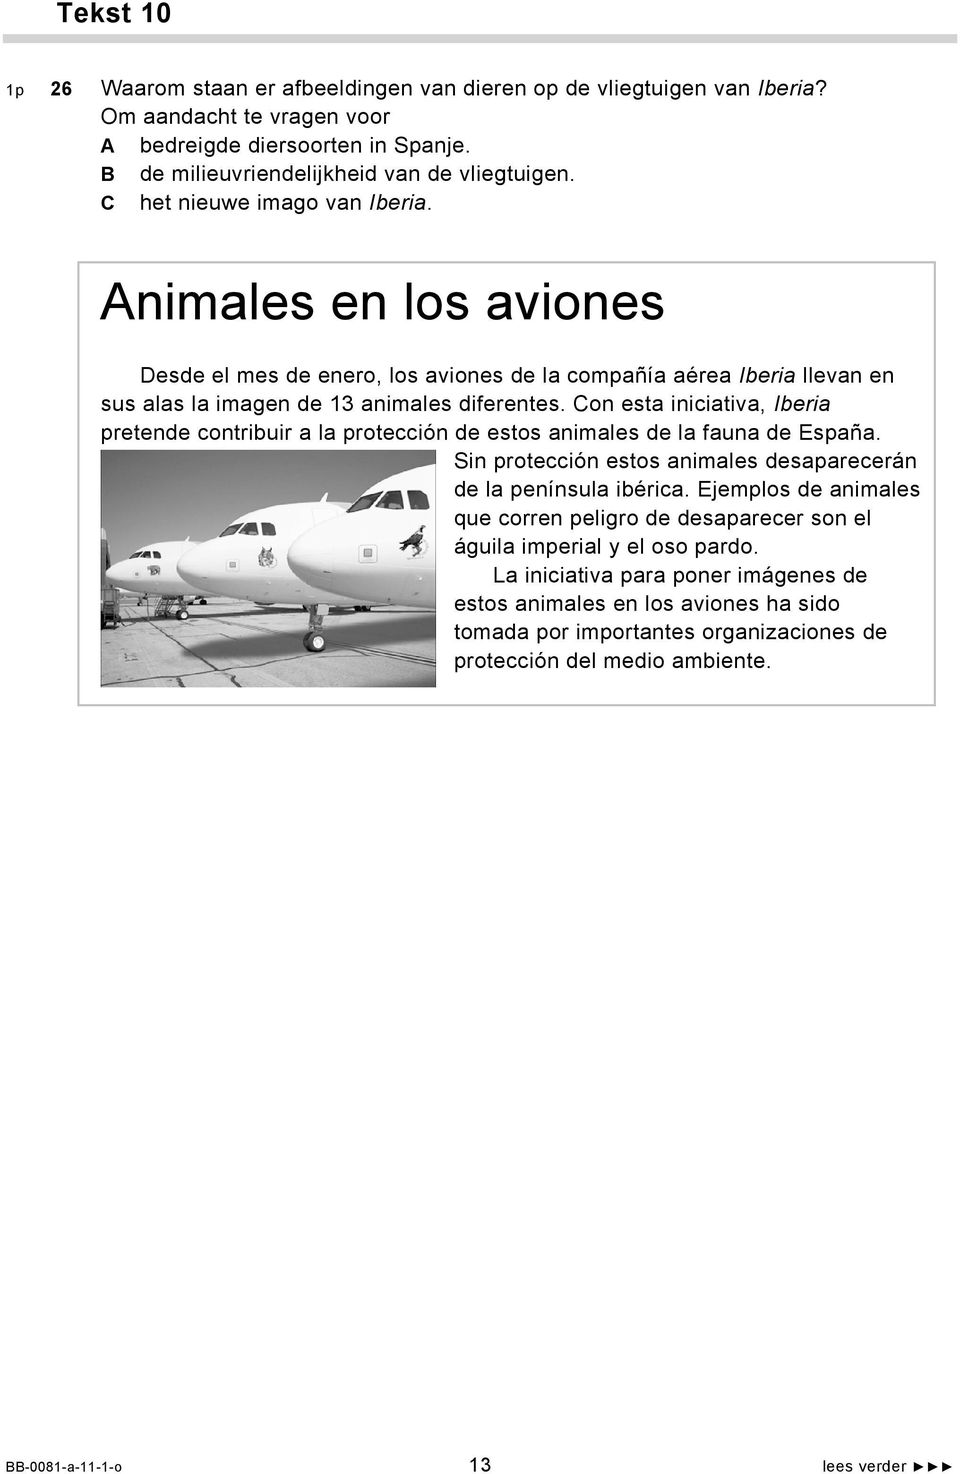 Con esta iniciativa, Iberia pretende contribuir a la protección de estos animales de la fauna de España. Sin protección estos animales desaparecerán de la península ibérica.